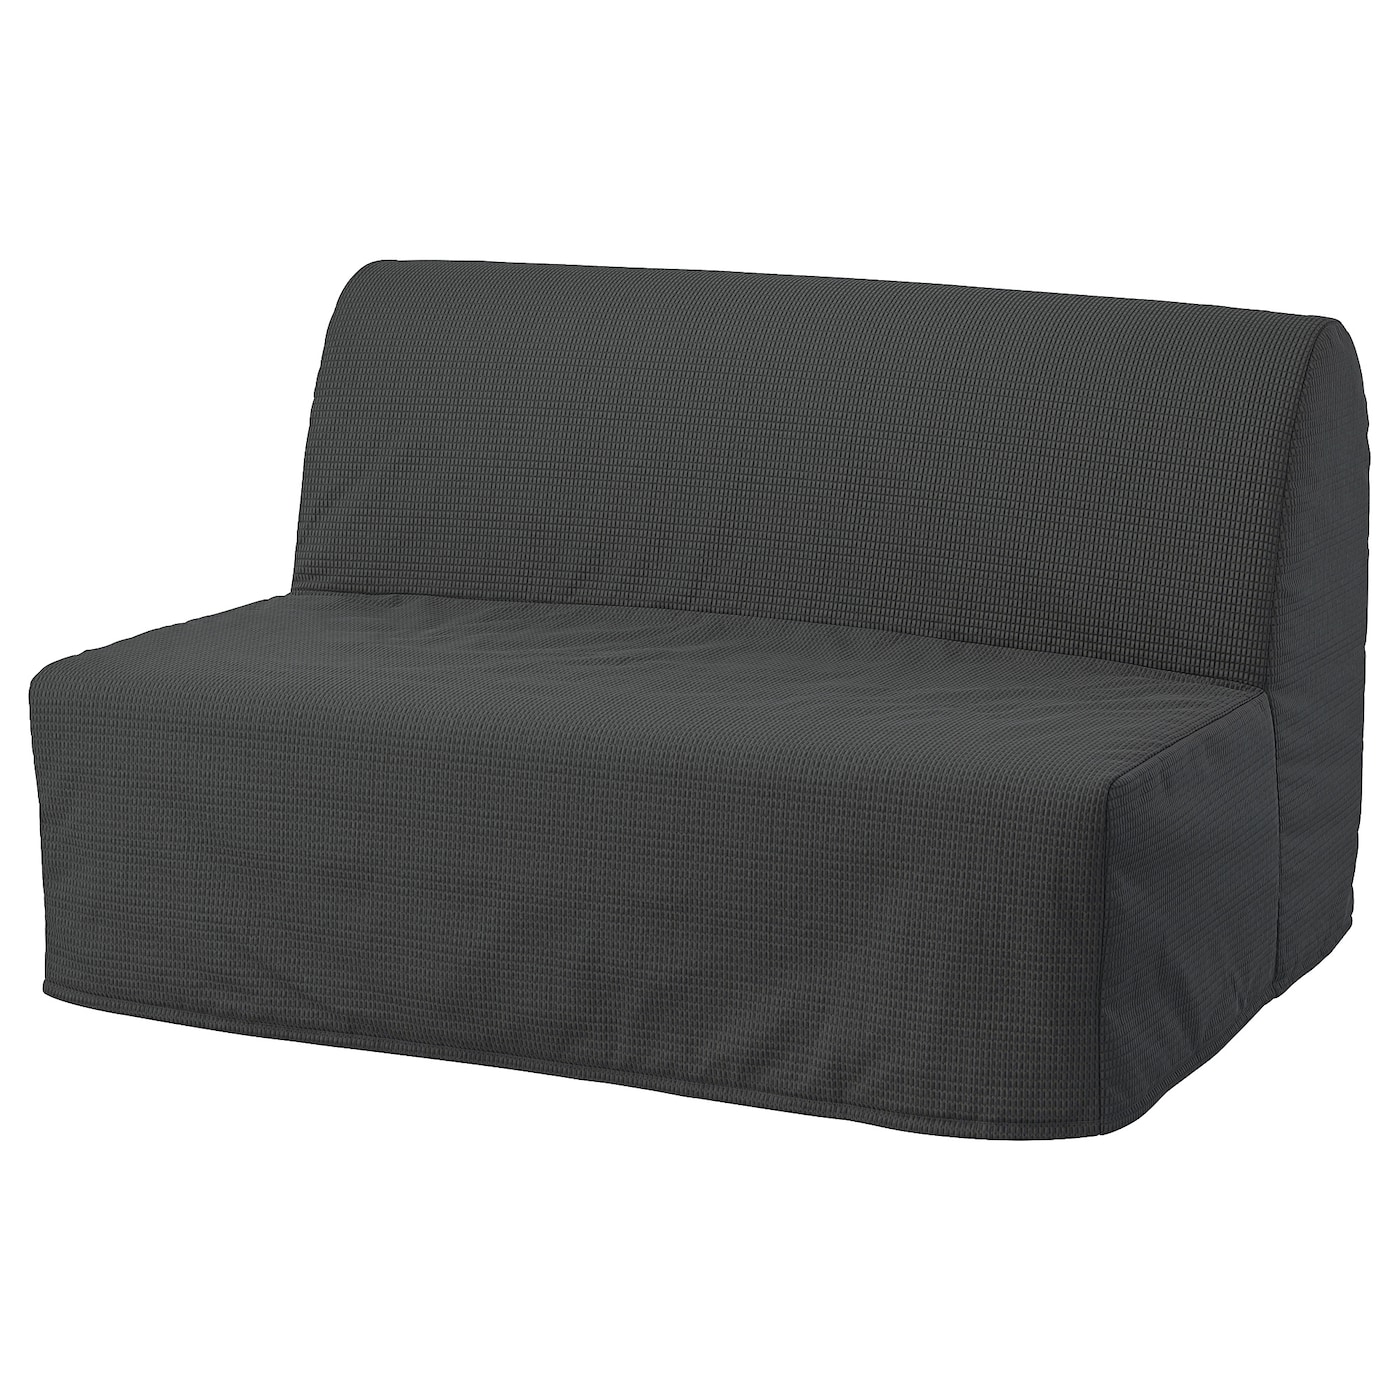 диван кровать шарм дизайн бит 2 серый кровать ЛИКСЕЛЕ МУРБО 2 раскладных дивана-кровати, Вансбро темно-серый LYCKSELE MURBO IKEA